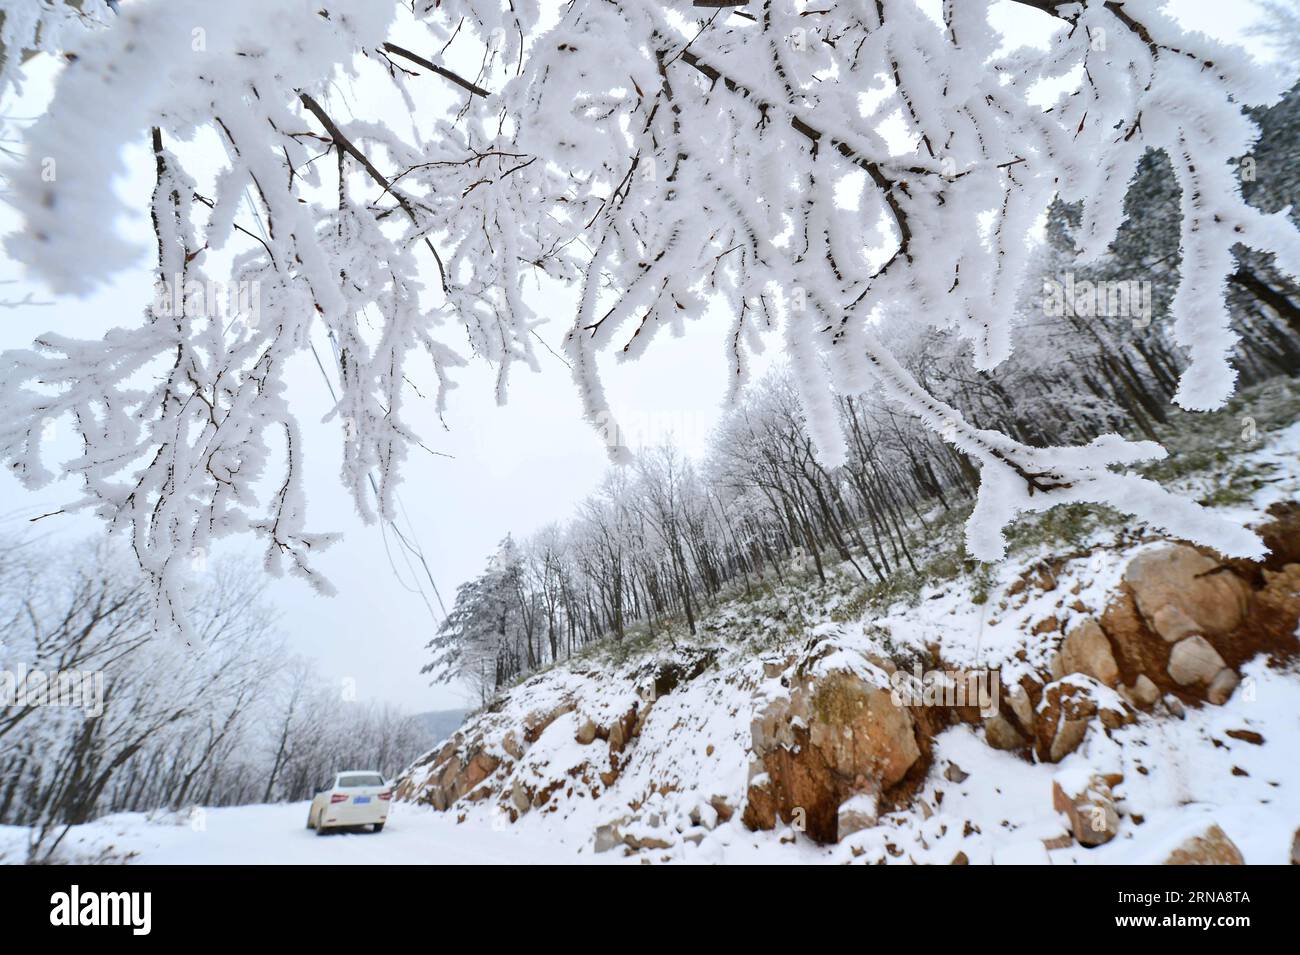 XIANGYANG, le 13 janvier 2016 -- la photo prise le 13 janvier 2016 montre le paysage de rime du canton de Longping, dans le comté de Baokang, dans la ville de Xiangyang, dans la province du Hubei en Chine centrale. (Ry) CHINA-HUBEI-XIANGYANG-RIME SCENERY (CN) YangxTao PUBLICATIONxNOTxINxCHN Xiang Yang Jan 13 2016 photo prise LE 13 2016 janvier montre le paysage rime À long Ping Township du comté de Baokang dans la ville de Xiang Yang Yang Central China S Hubei province de Ry China Hubei Xiang Yang Yang Yang scène CN Banque D'Images